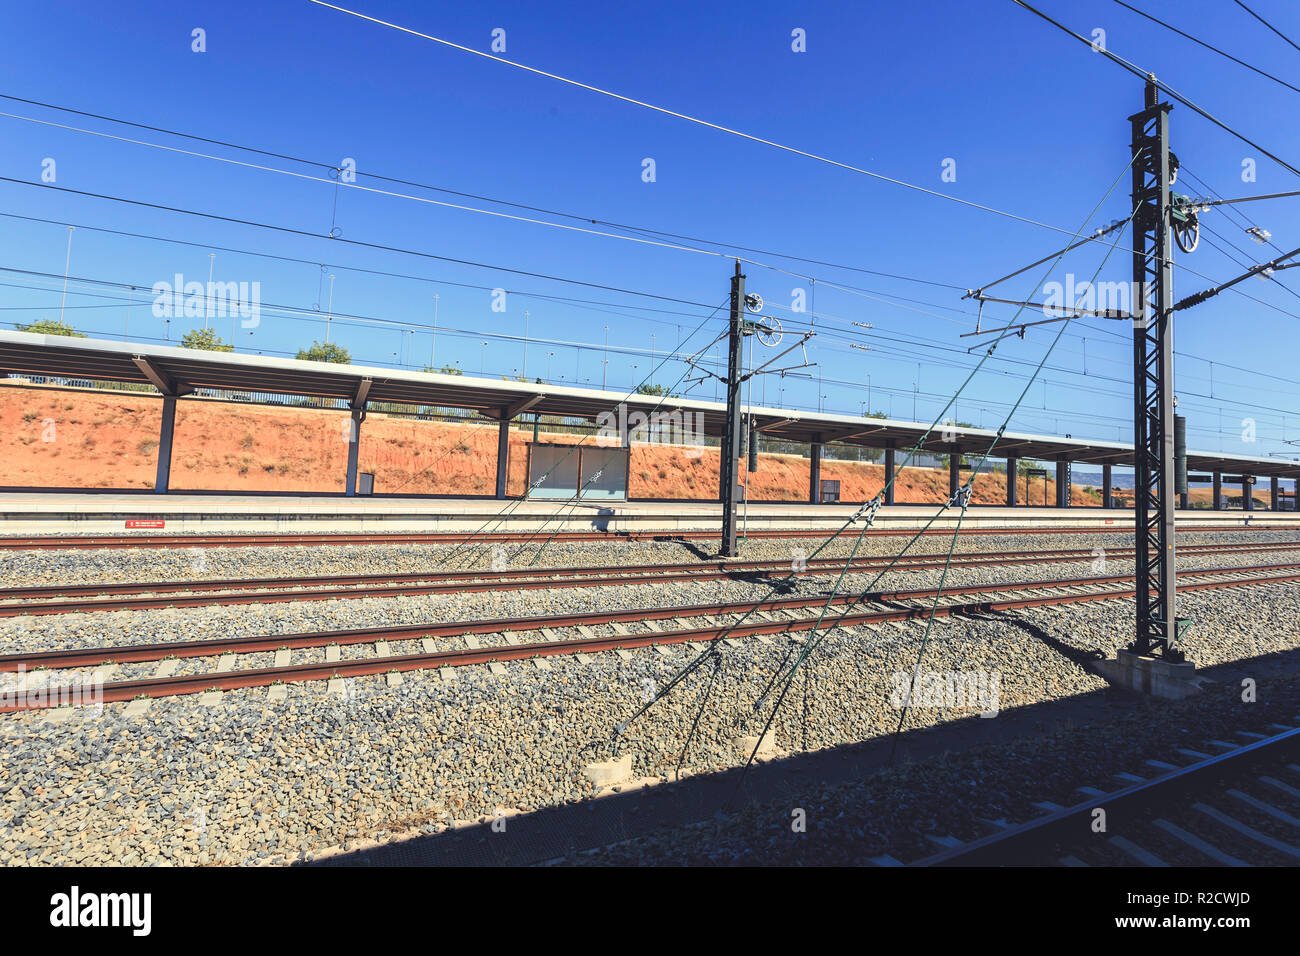 Binari del treno con la catenaria di overhead e linee elettriche in un cielo blu di sfondo, alla stazione di Cuenca Foto Stock